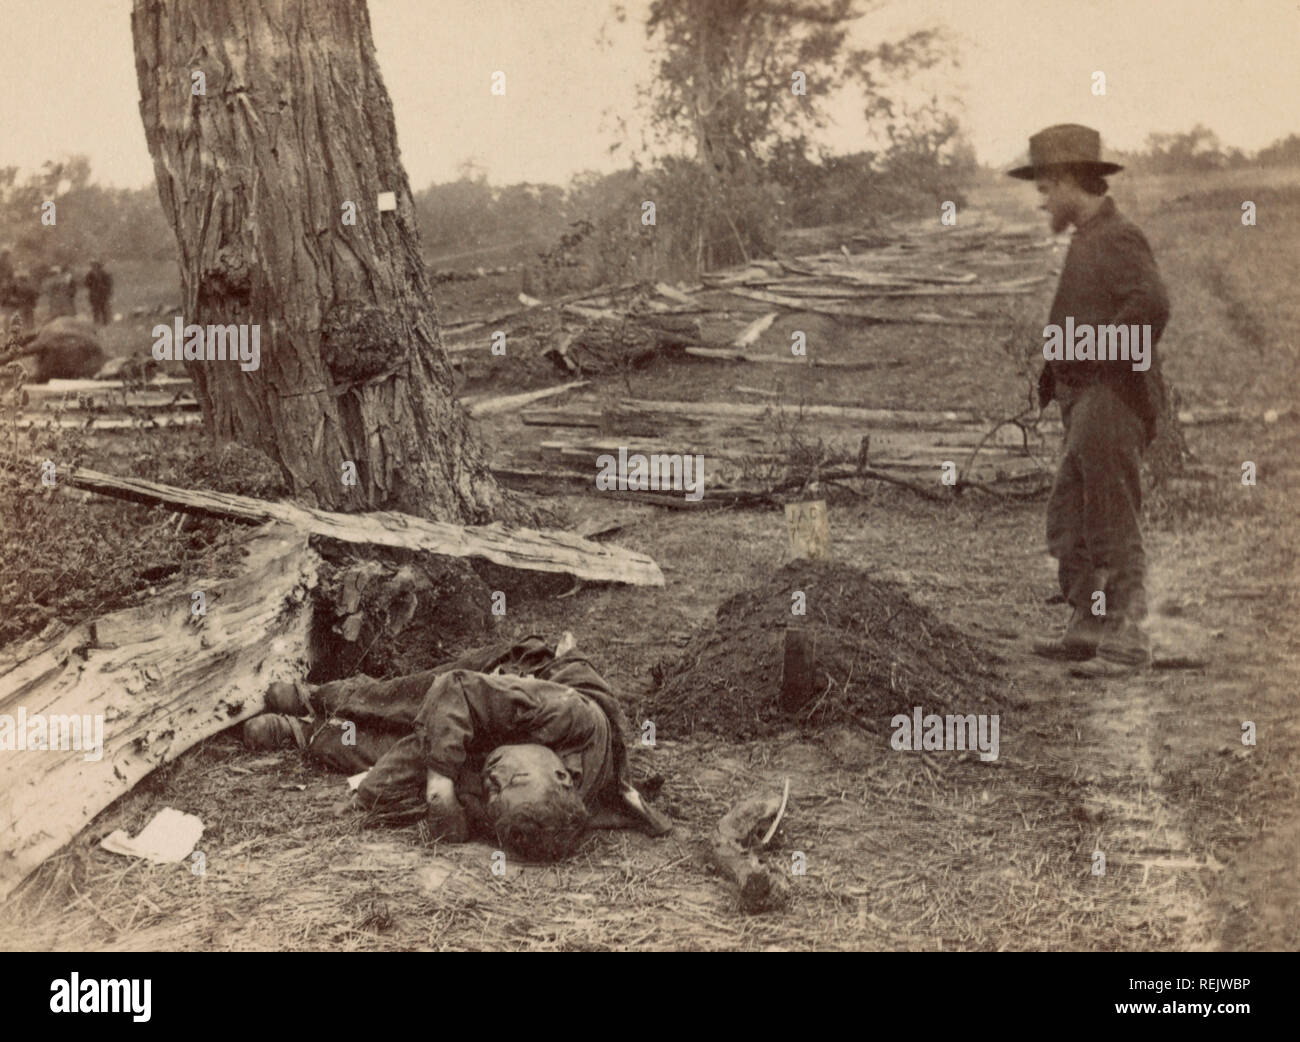 Mann am Grab von 1 Leutnant John Clark, das Unternehmen D, 7 Michigan Infanterie, wie tot Rebel Soldier in der Nähe liegt, Schlacht von Antietam, Antietam, Maryland, USA, Alexander Gardner, 19. September 1862 Stockfoto